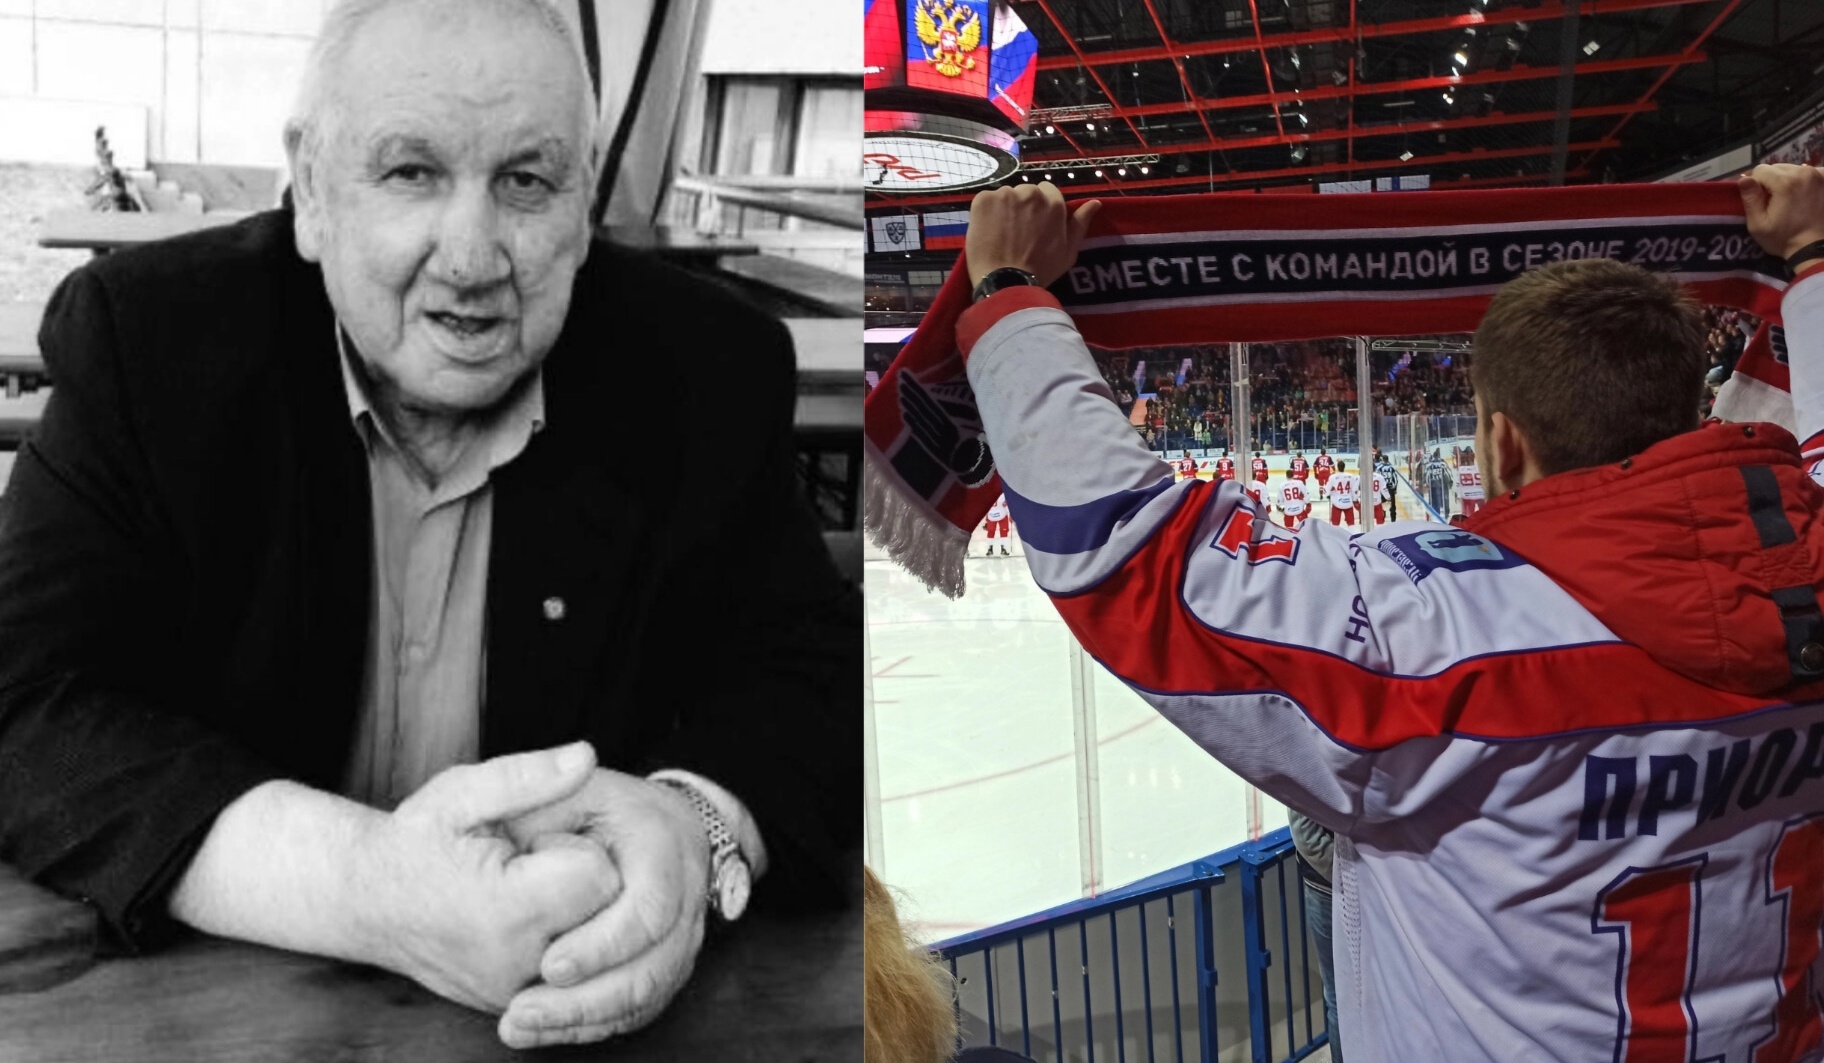  В Ярославле умер известный хоккеист